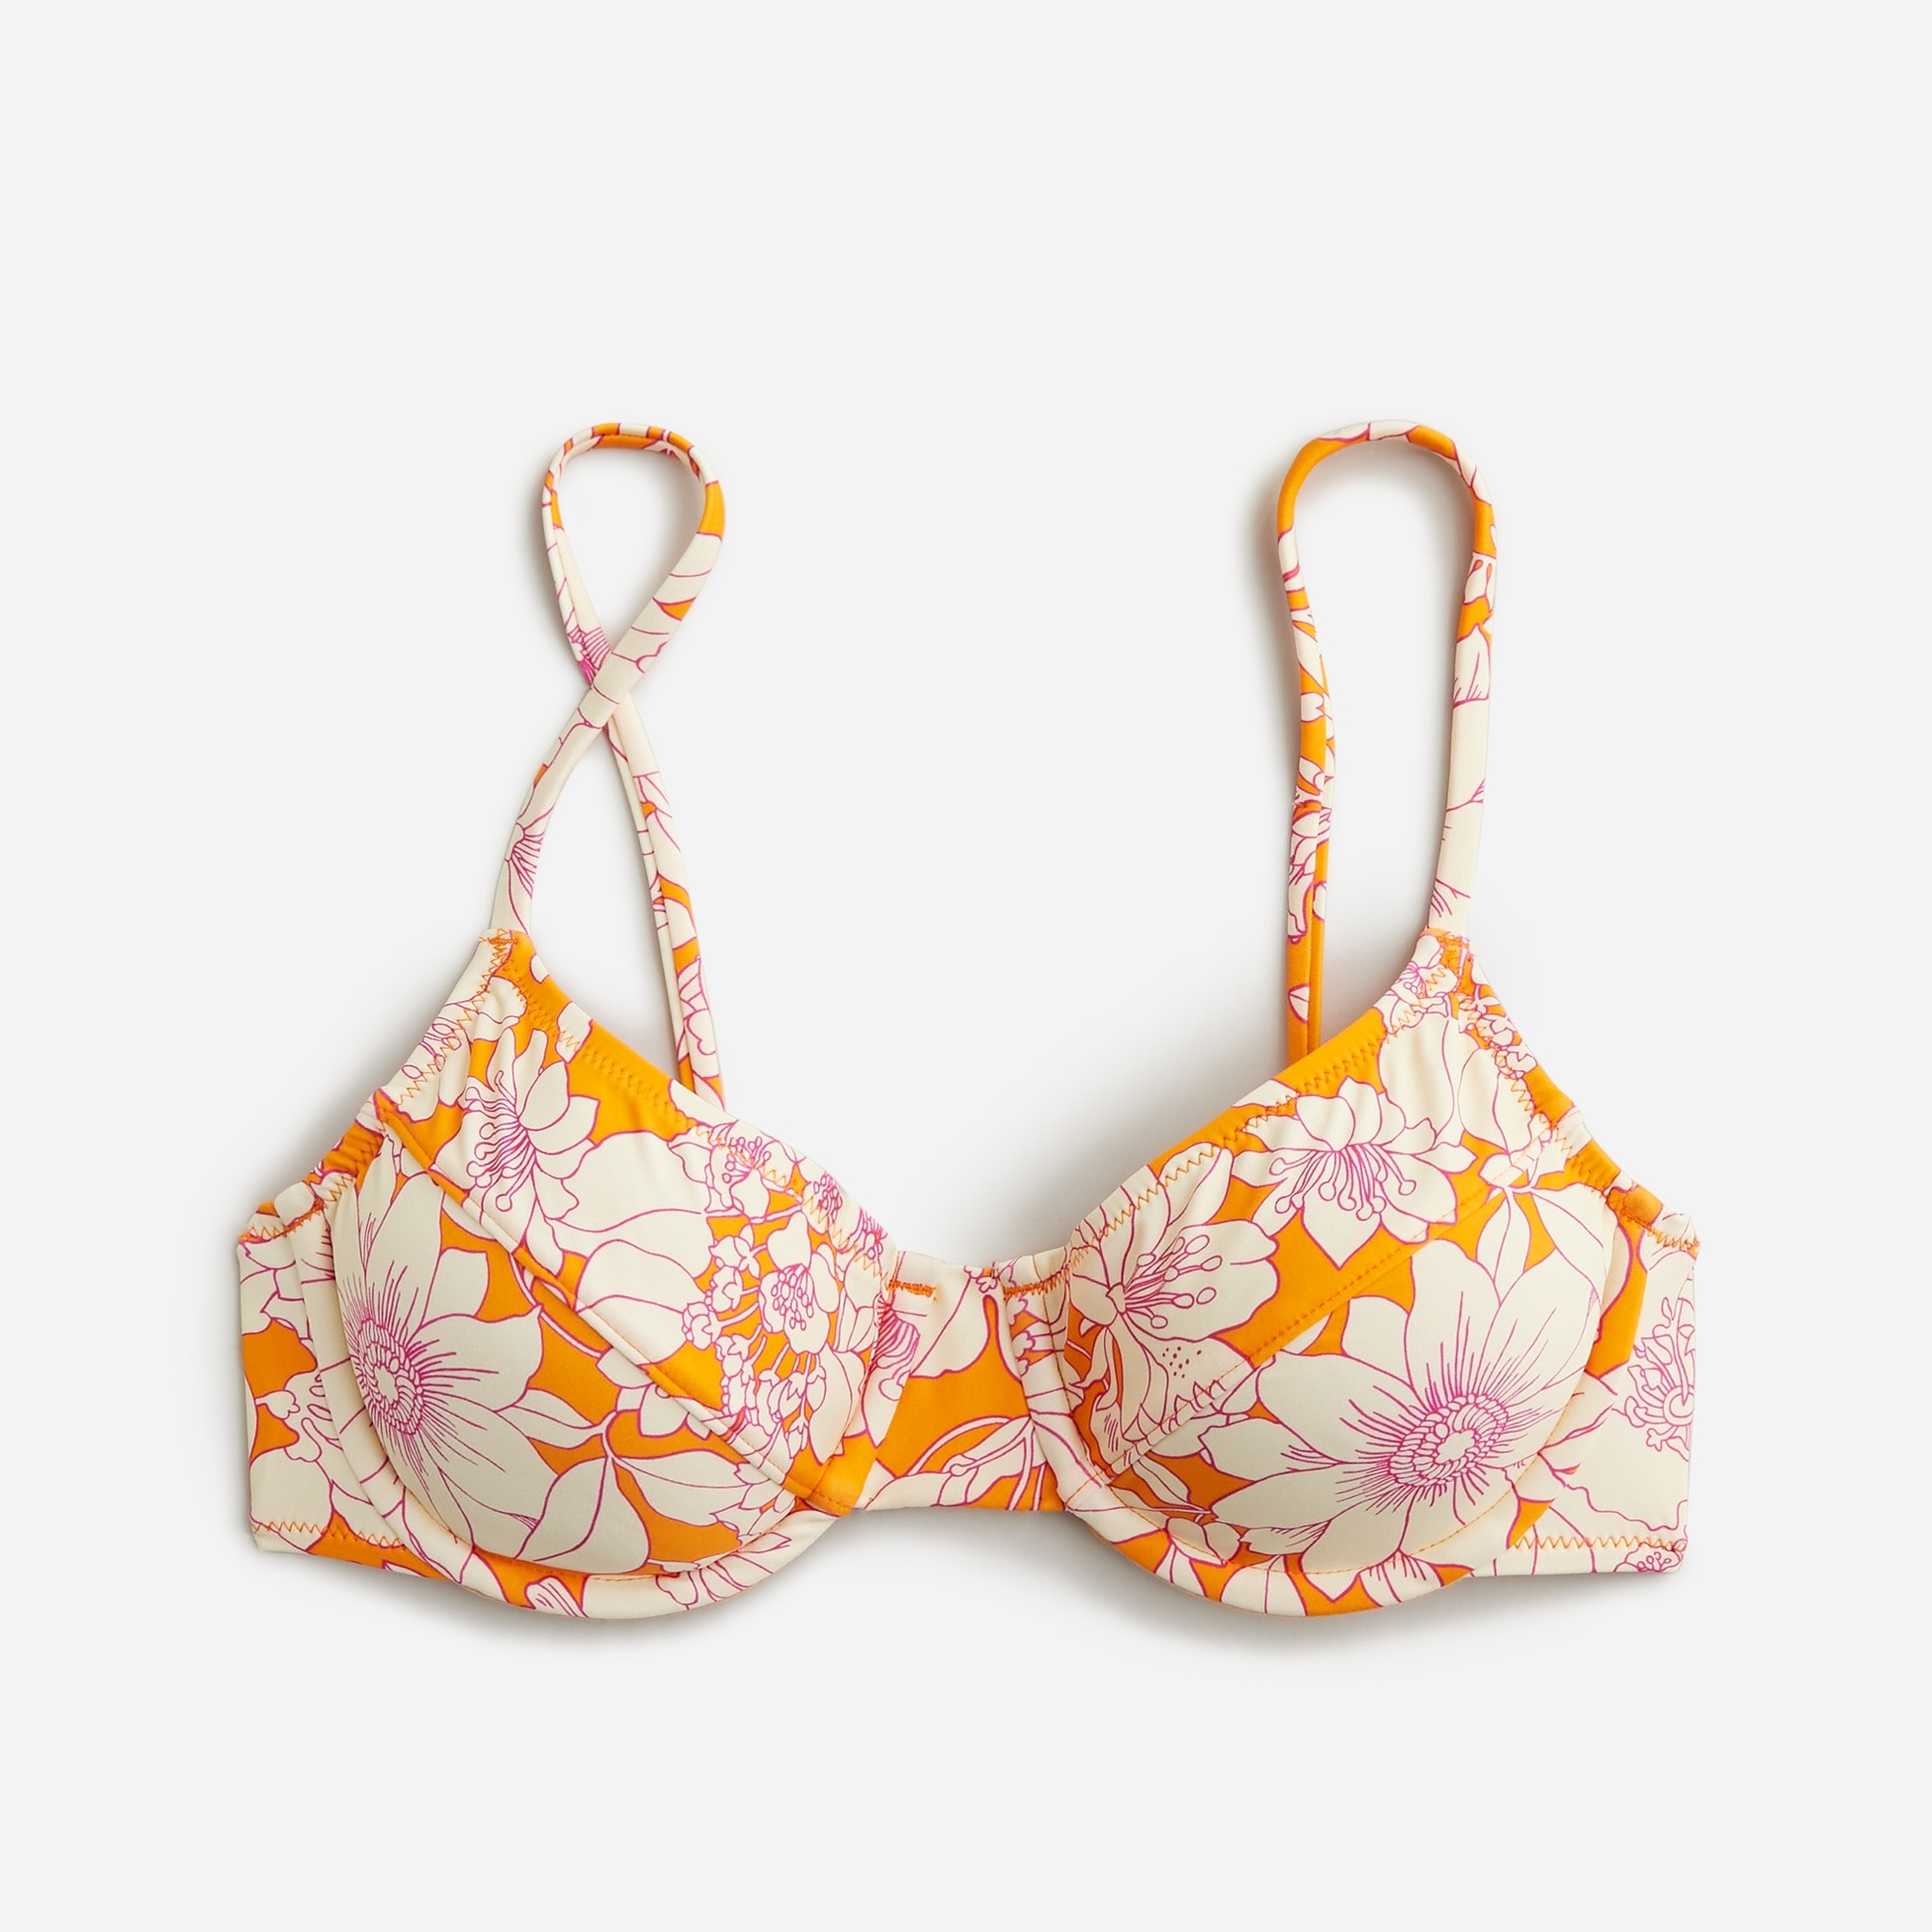  1993 underwire bikini top in orange floral